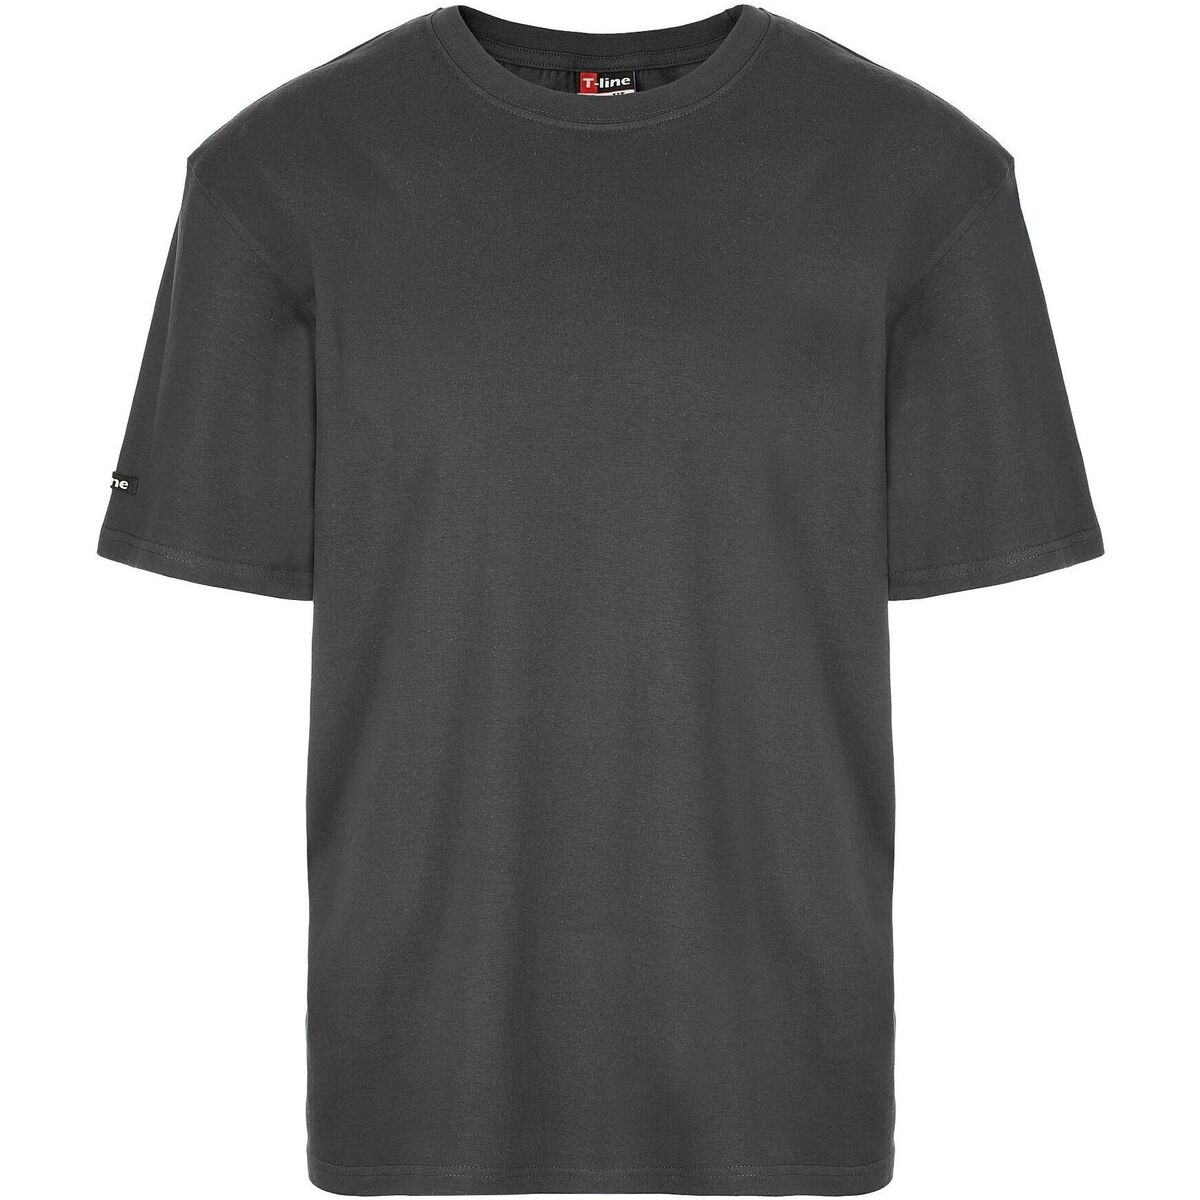 Textil Muži Trička s krátkým rukávem Esotiq & Henderson Pánské tričko 